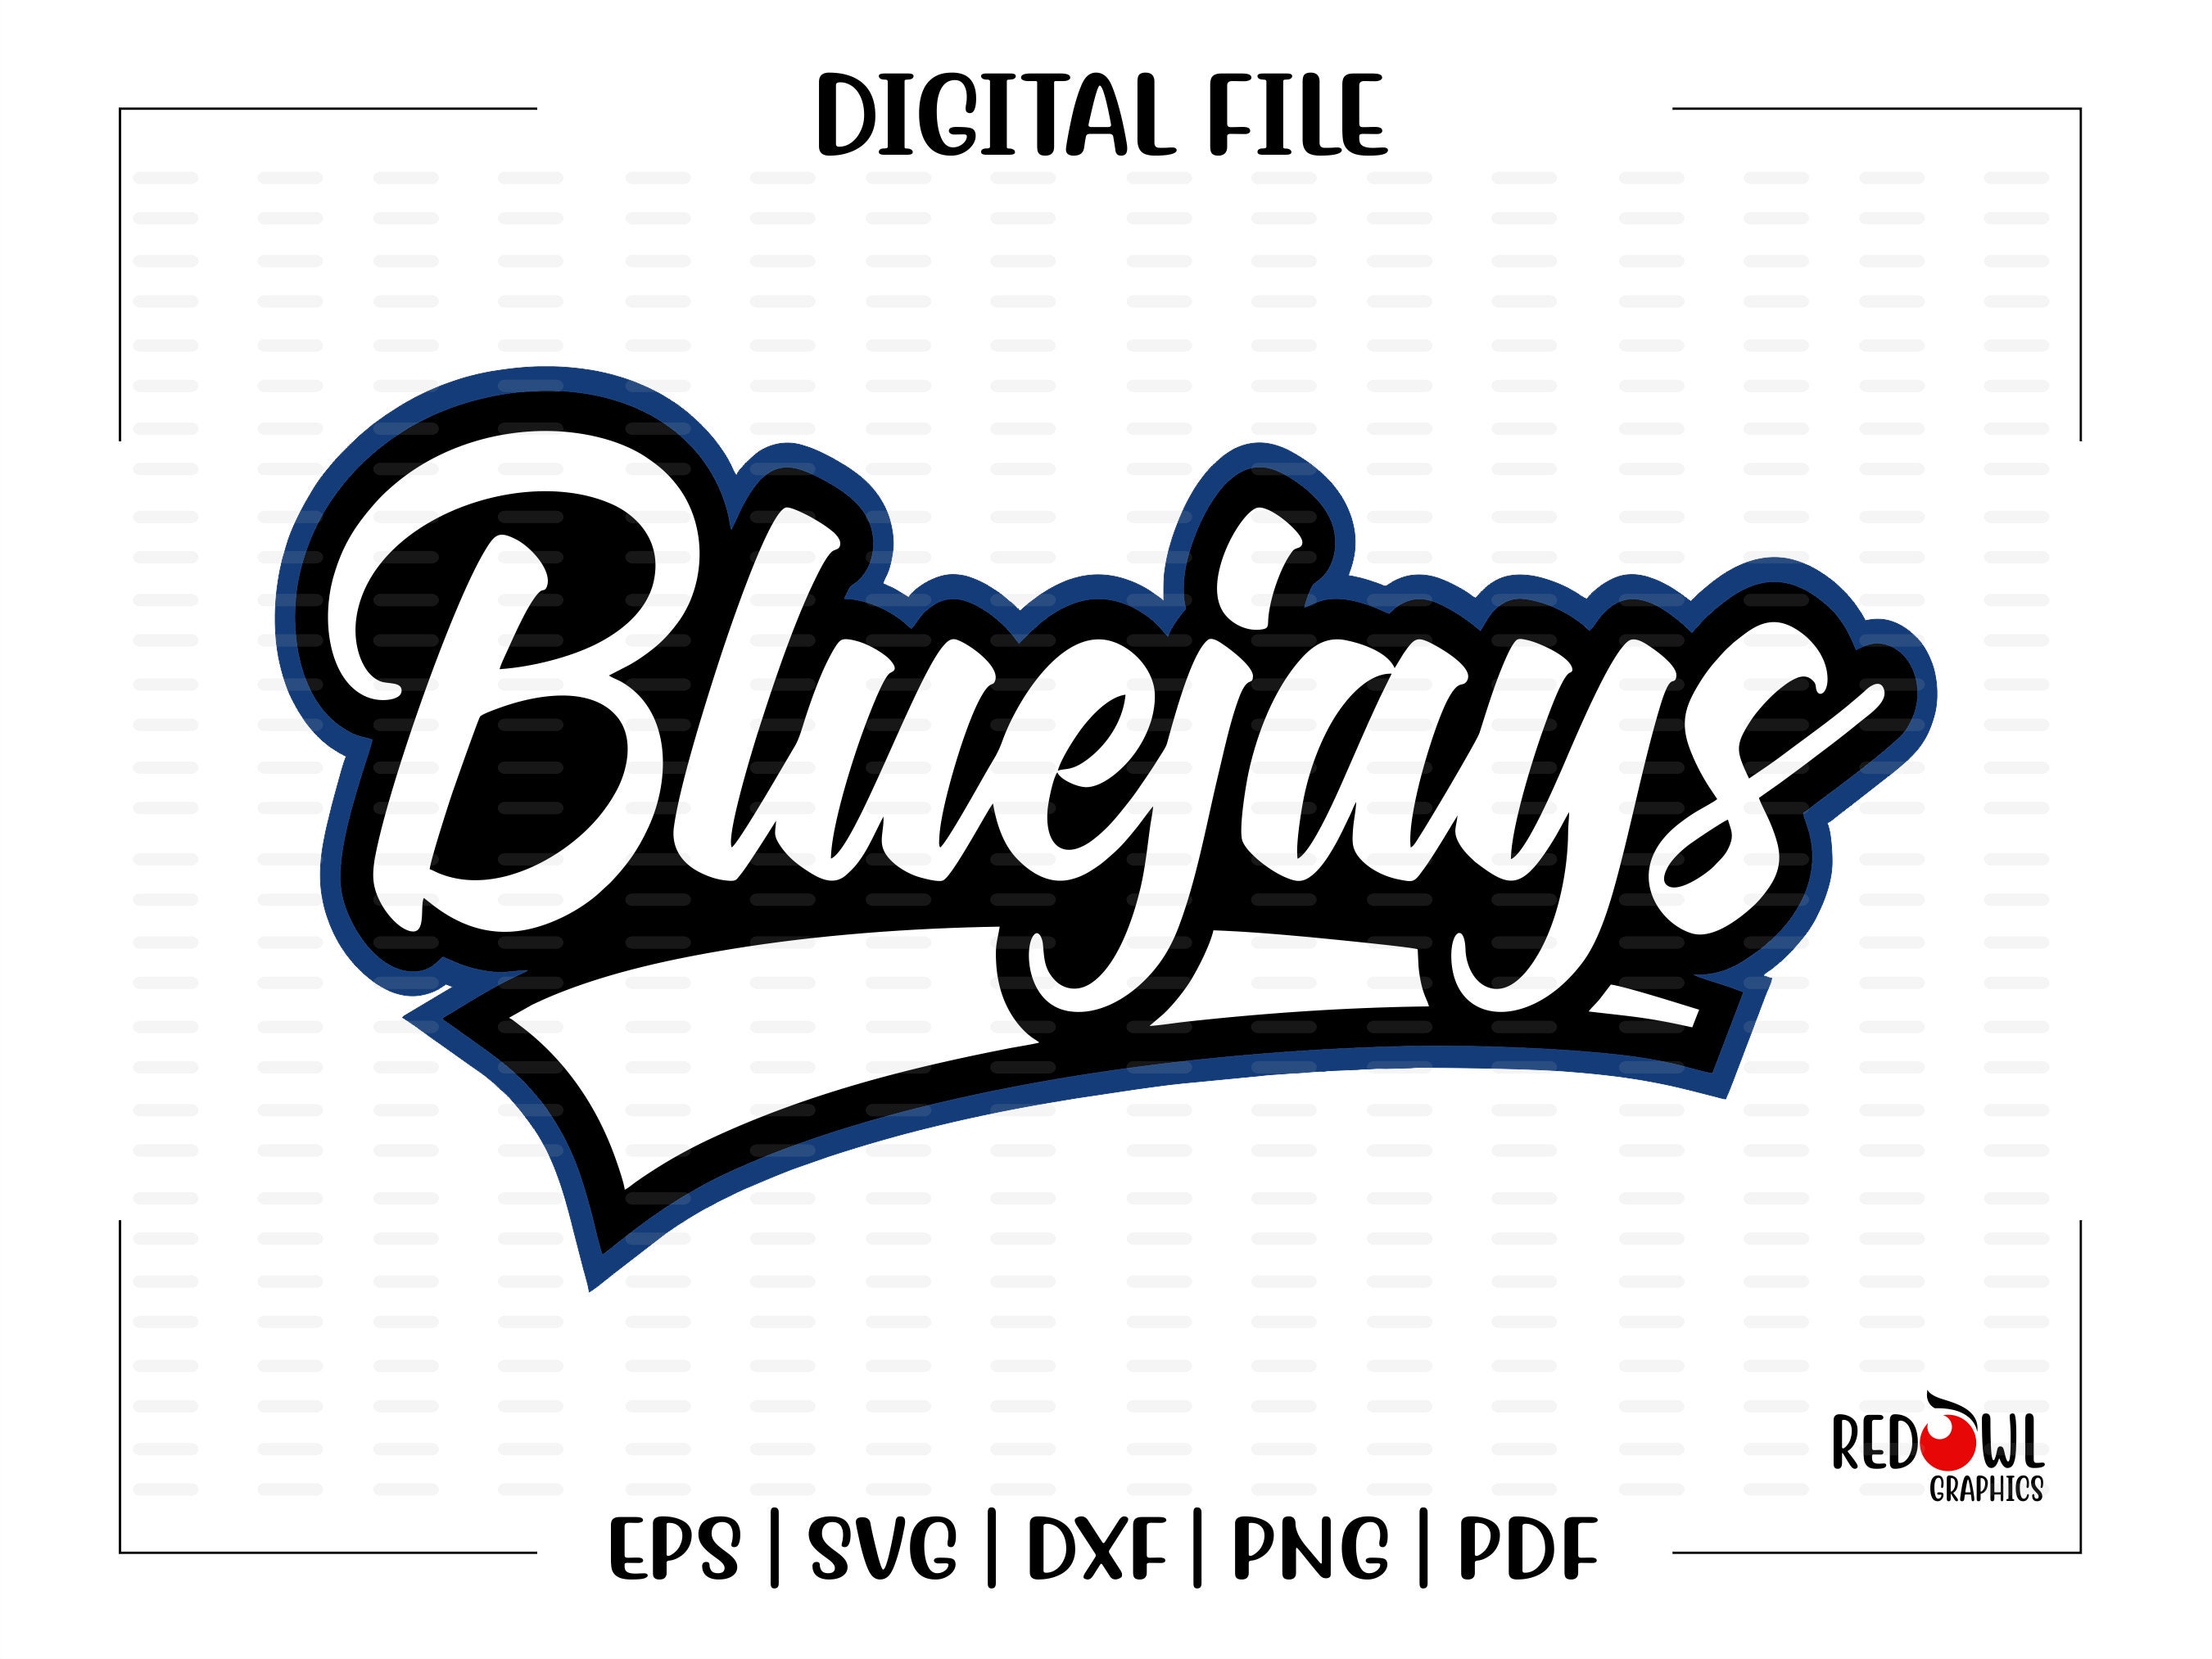 Dunedin Blue Jays Logo PNG Vector (SVG) Free Download